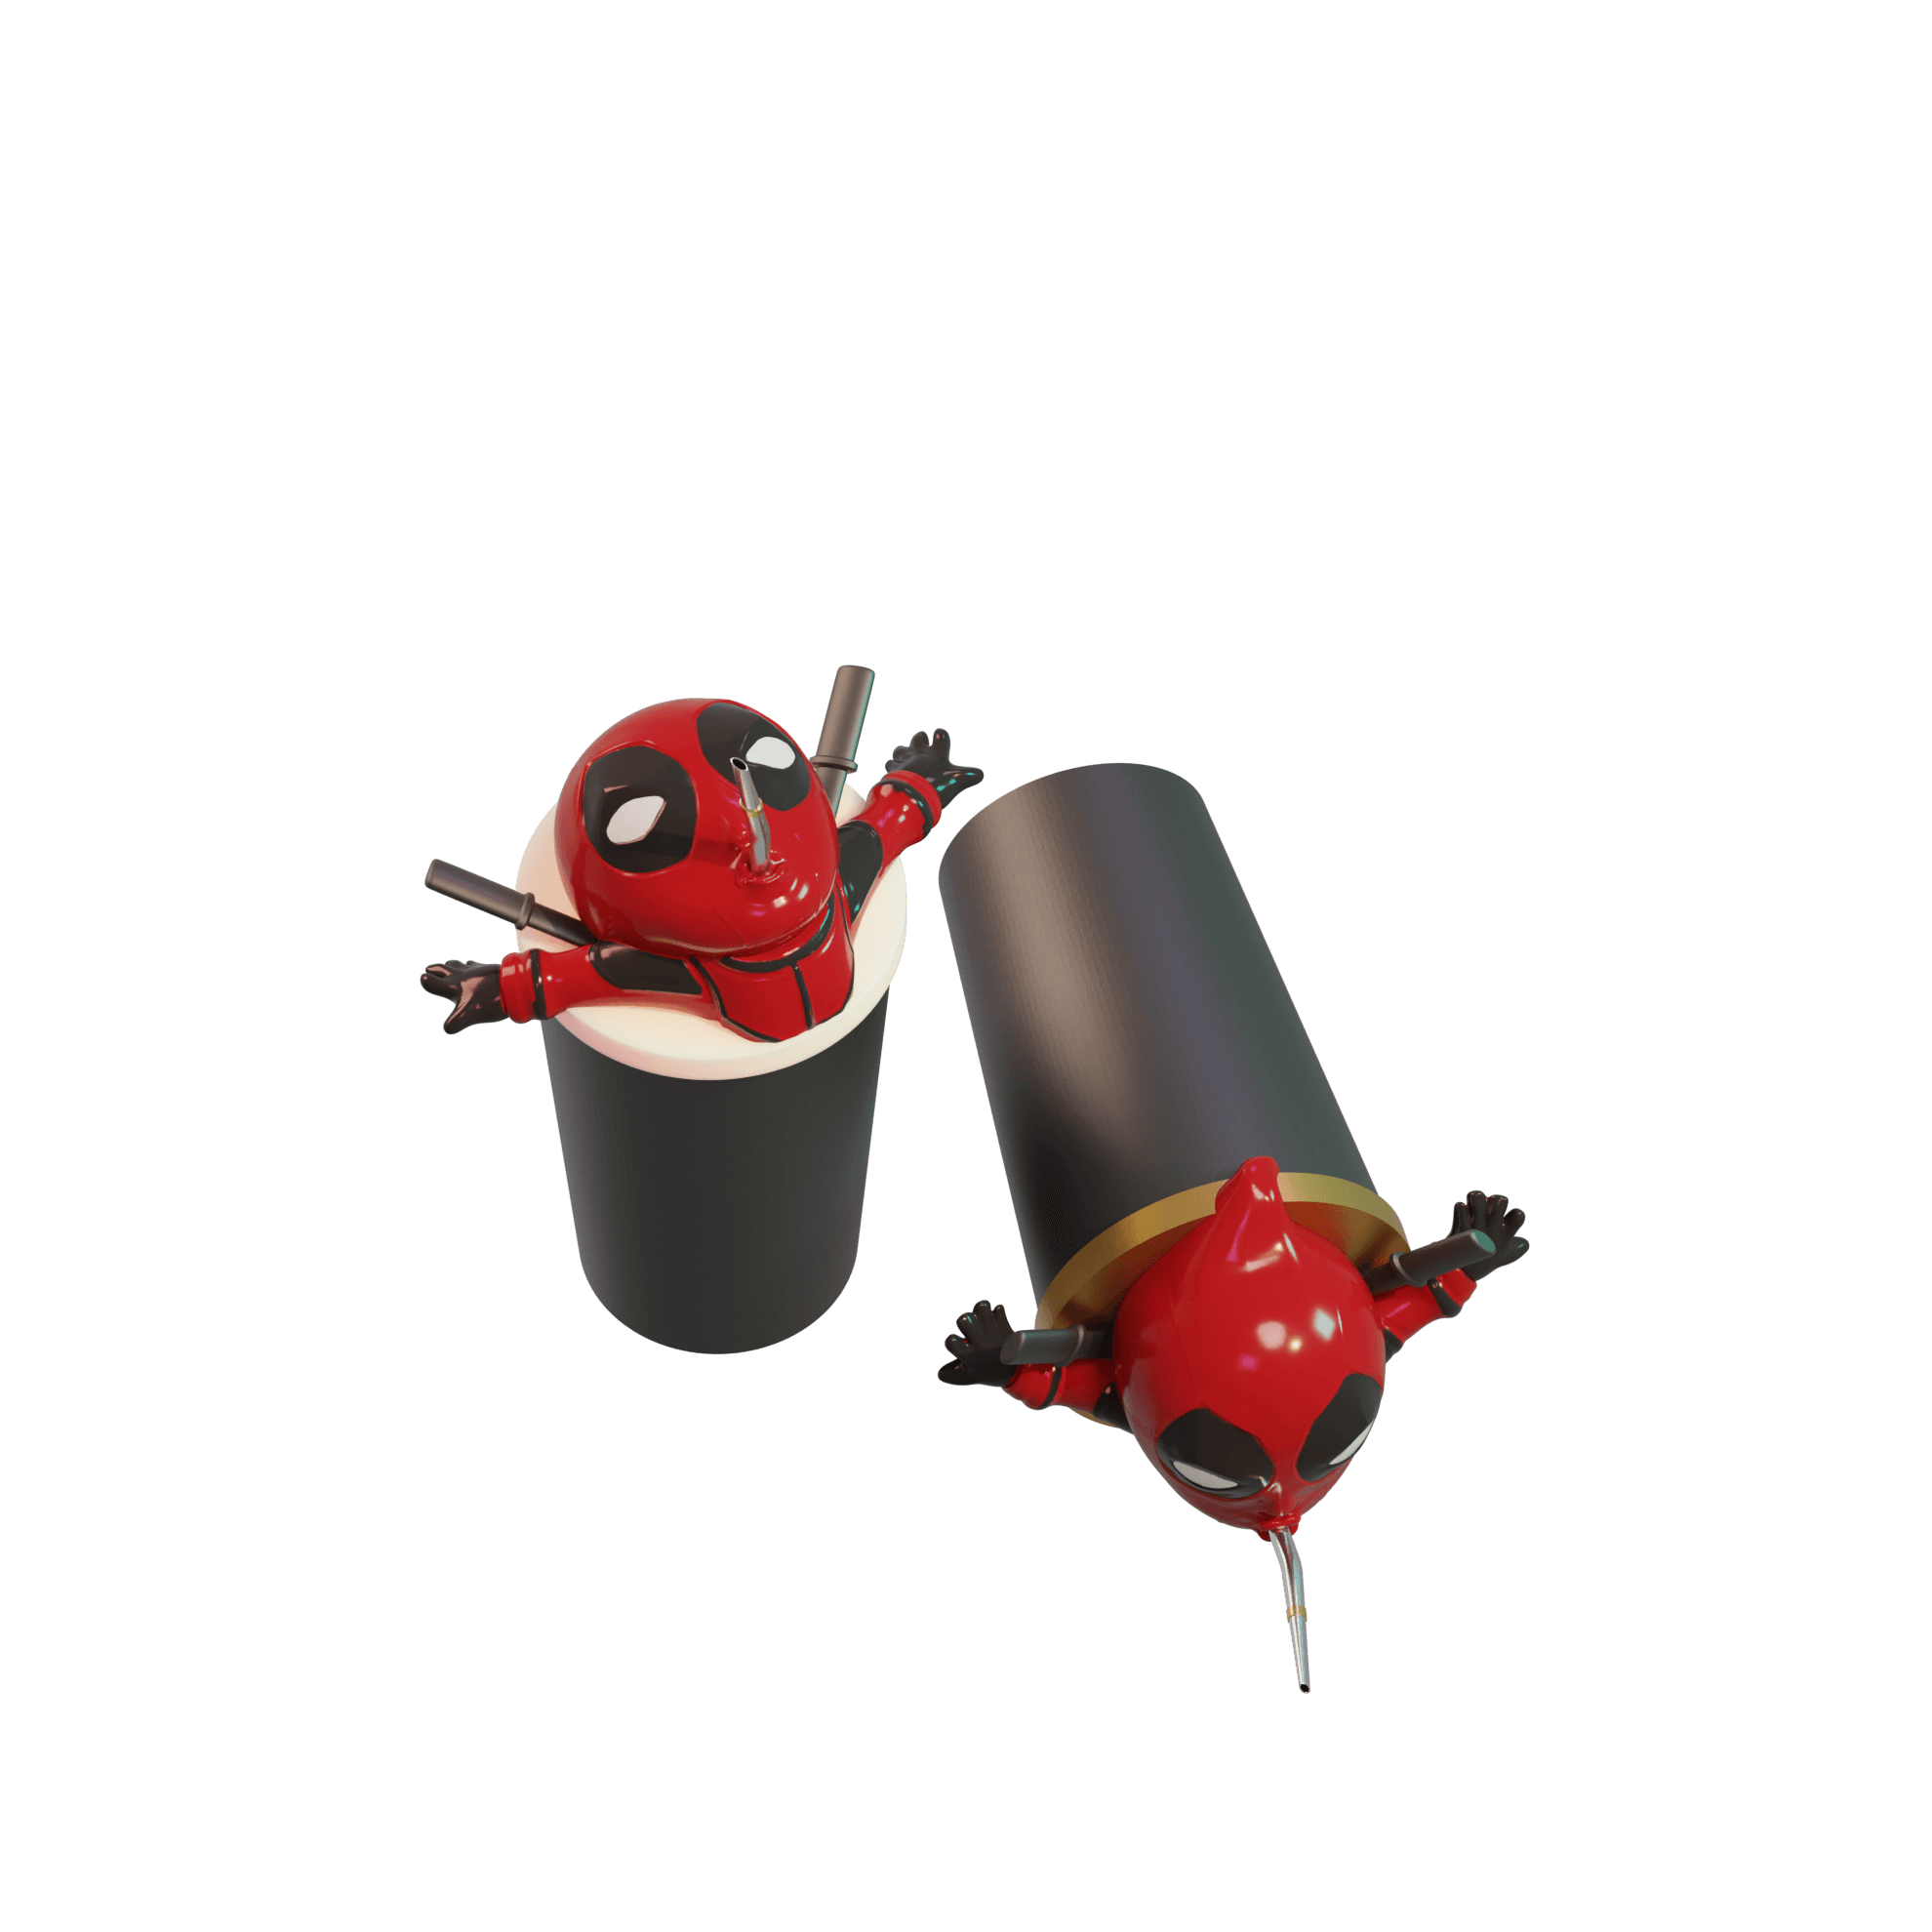 Deadpool Soda Can Cup  3d model